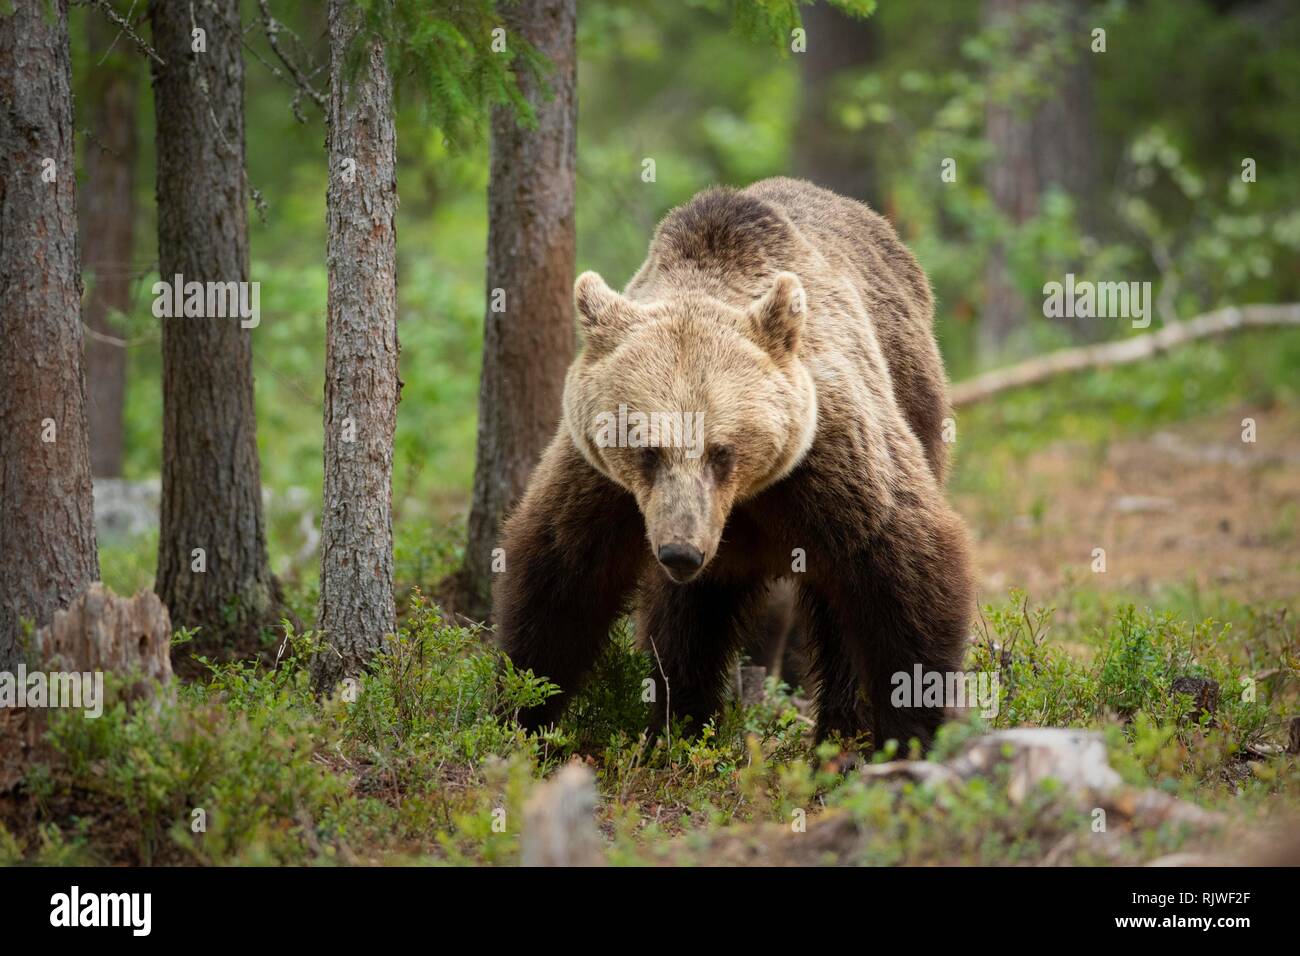 European brown bear (Ursus arctos arctos) in the forest, Suomussalmi, Kainuu, Finland Stock Photo